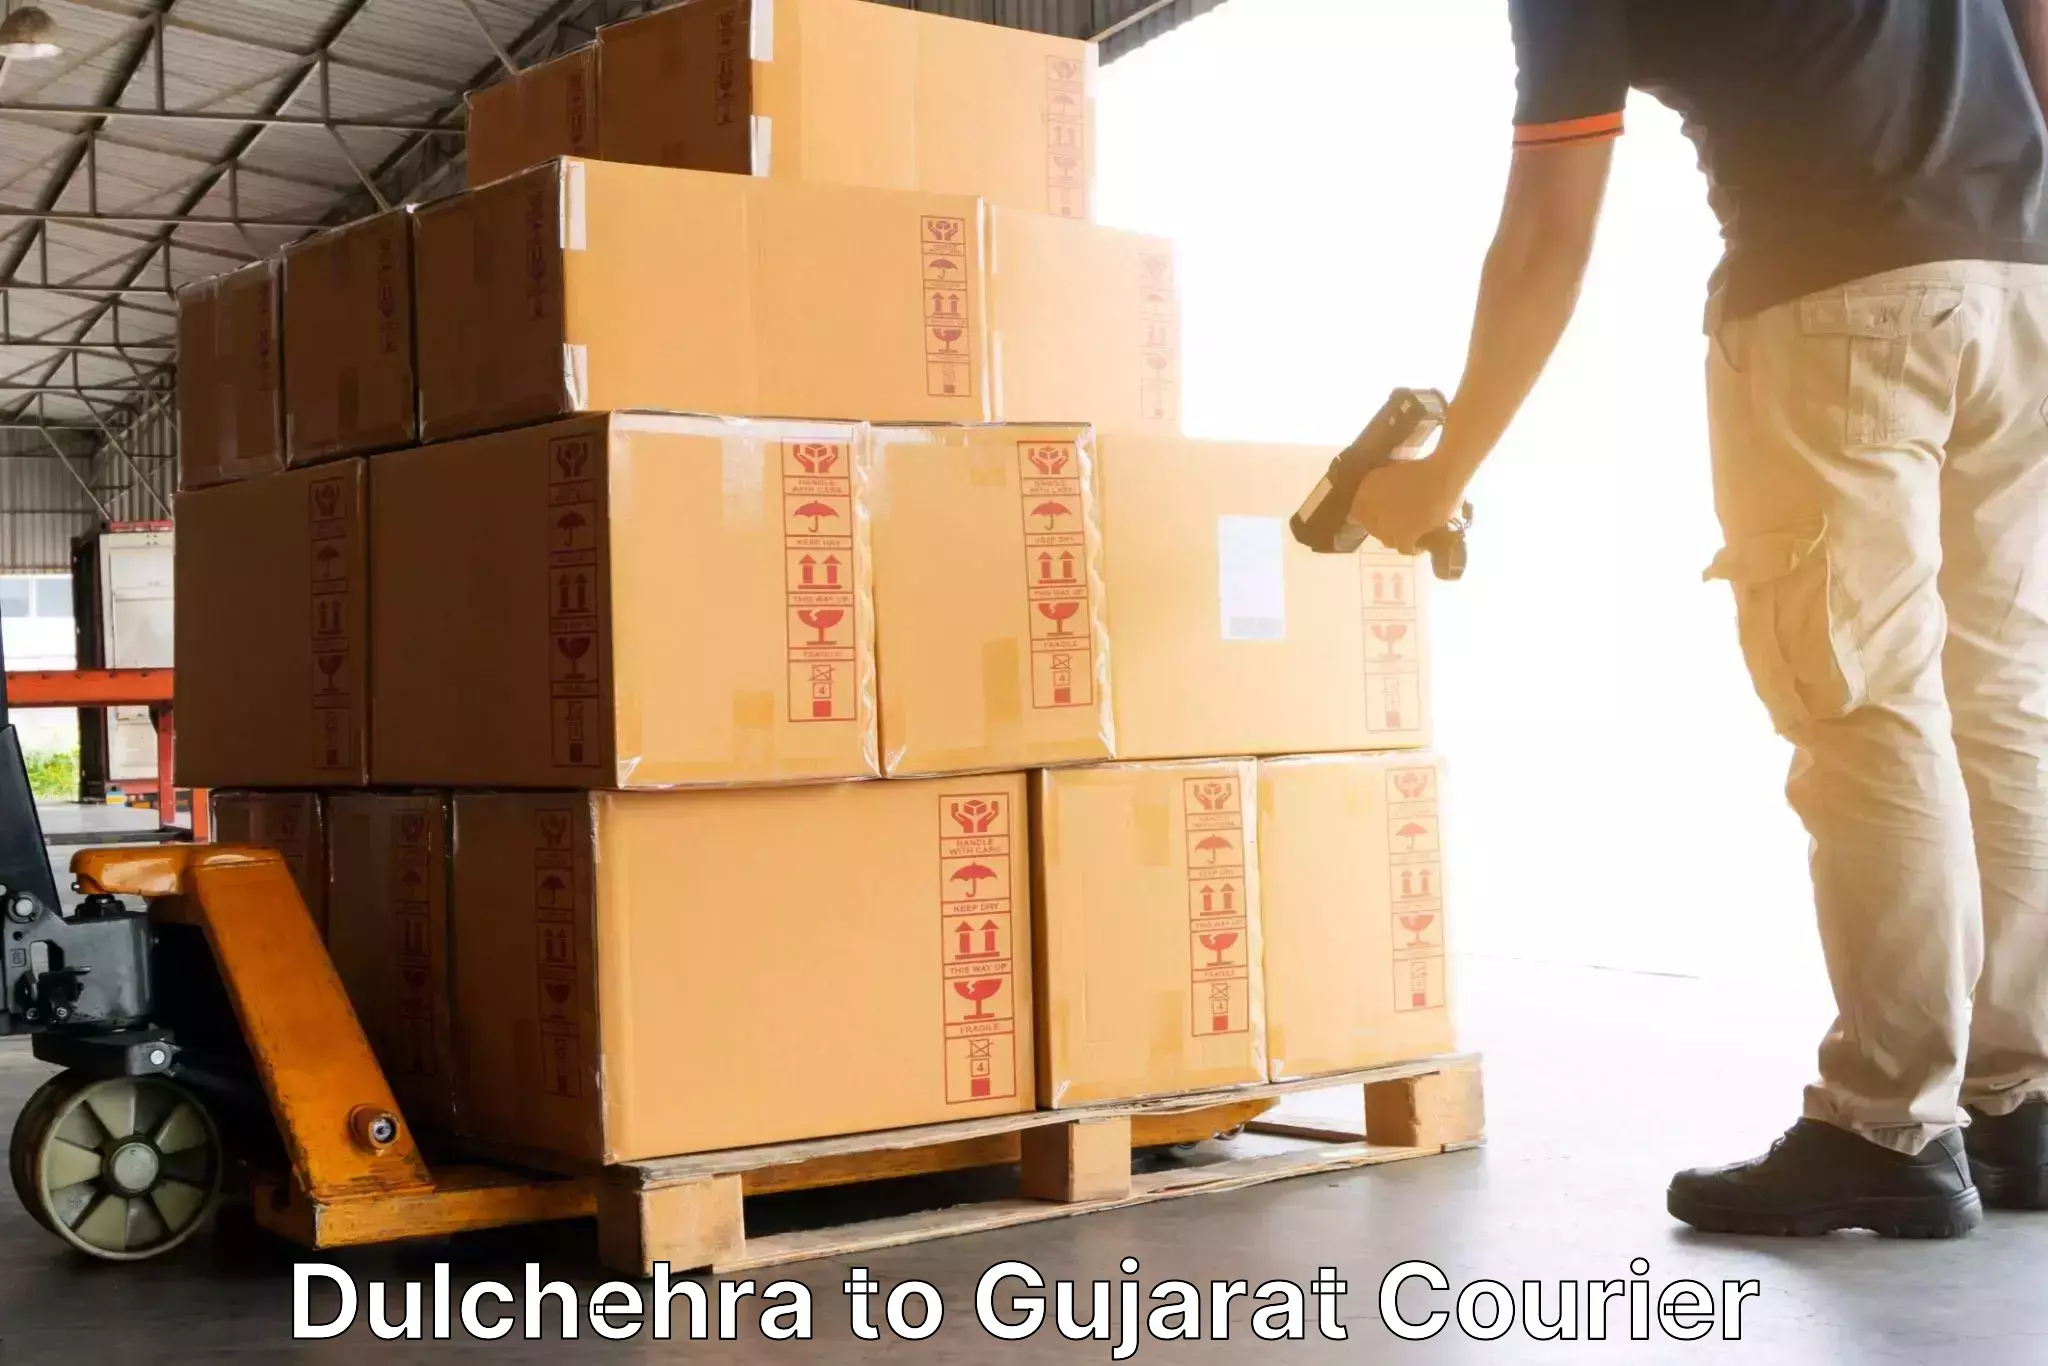 Customizable delivery plans Dulchehra to IIIT Surat